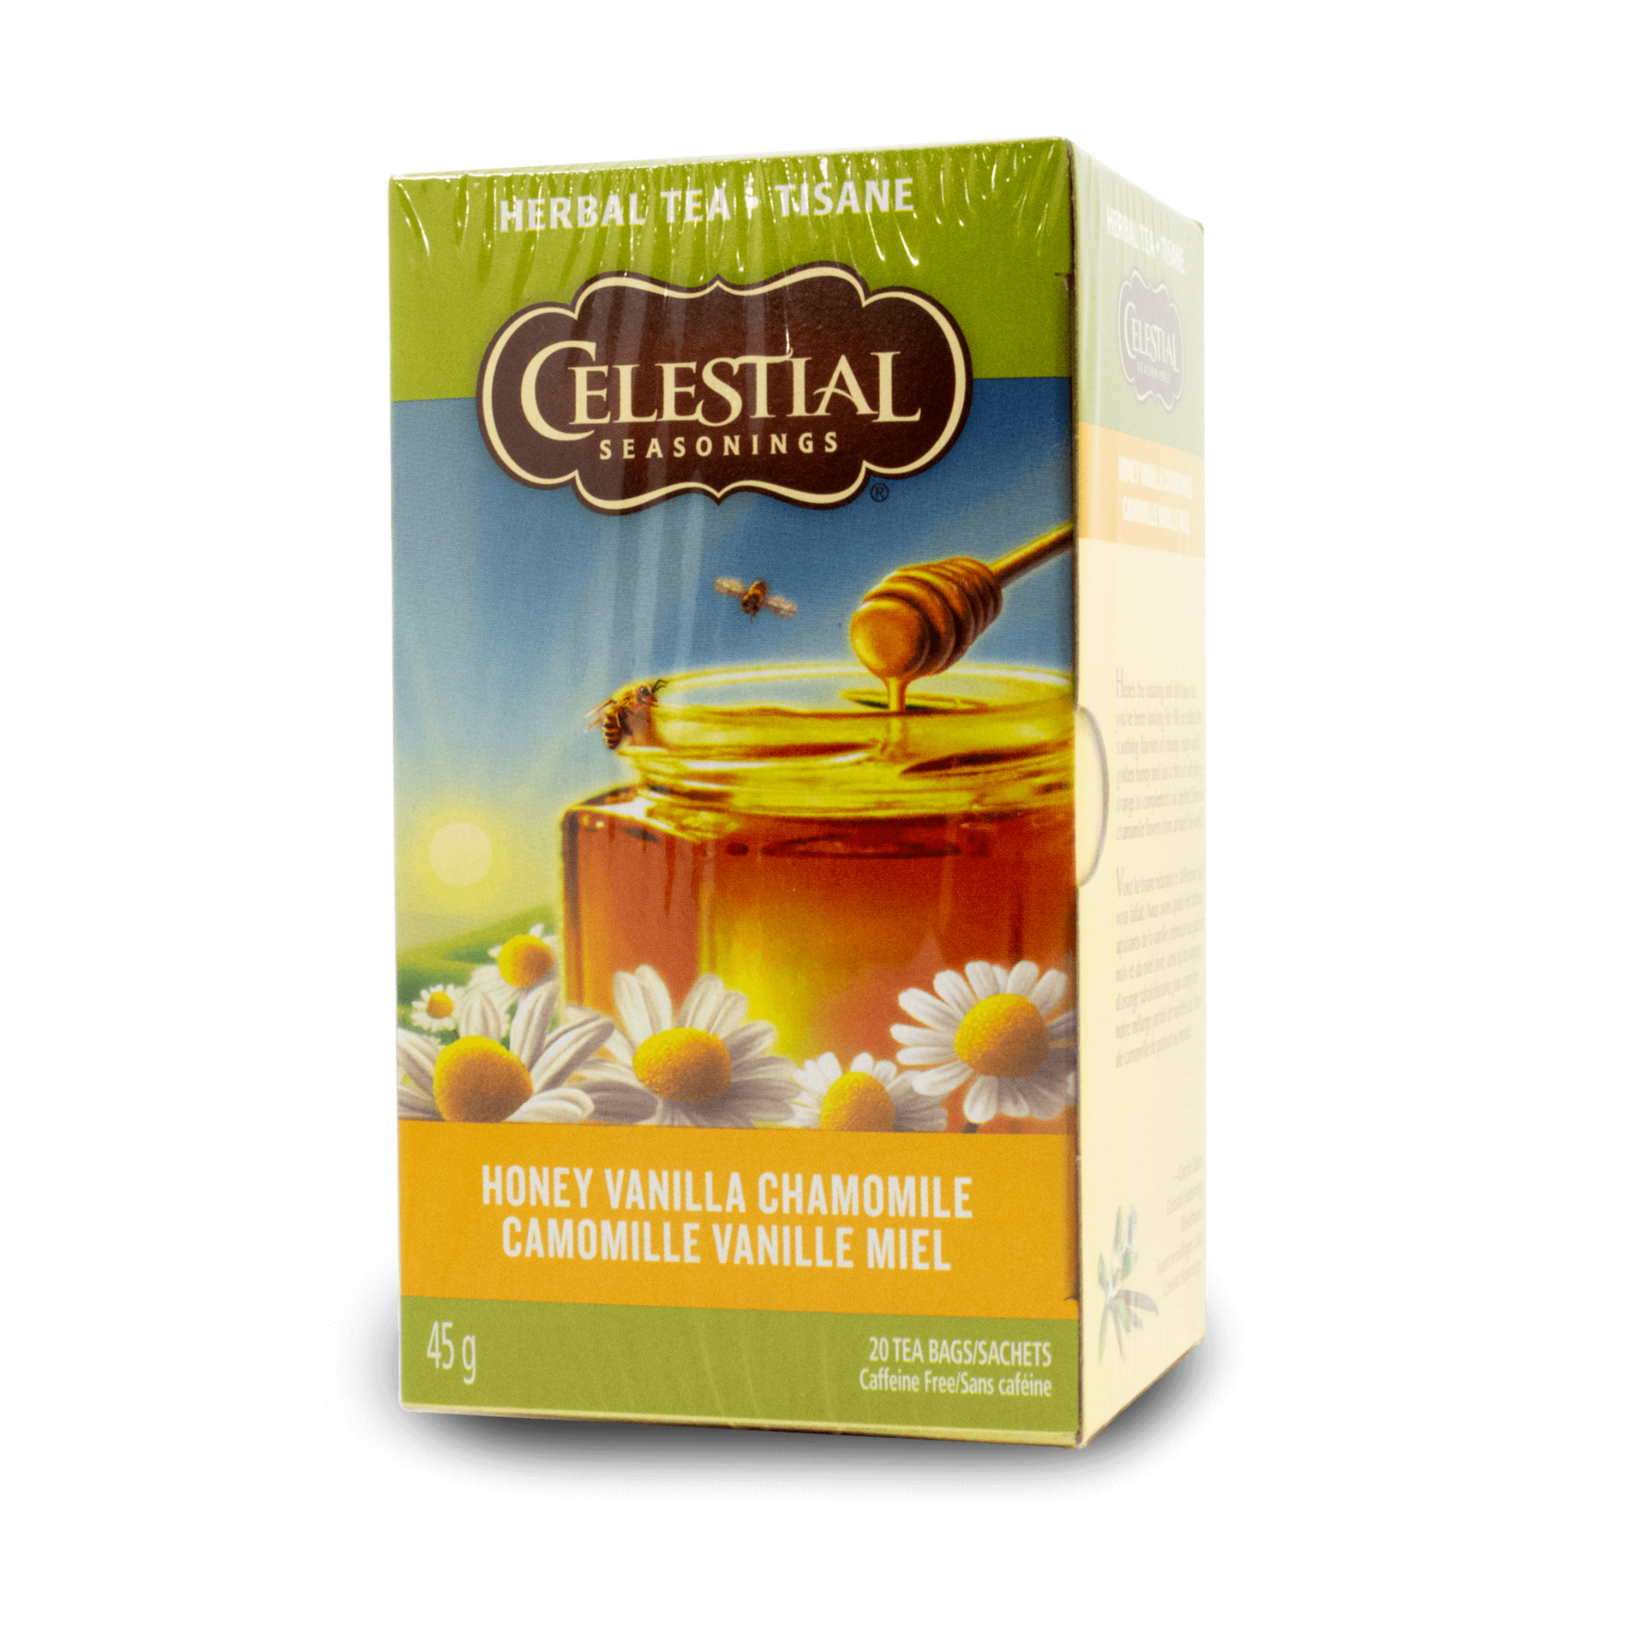 Celestial Seasonings Celestial Seasonings Honey Vanilla Chamomile